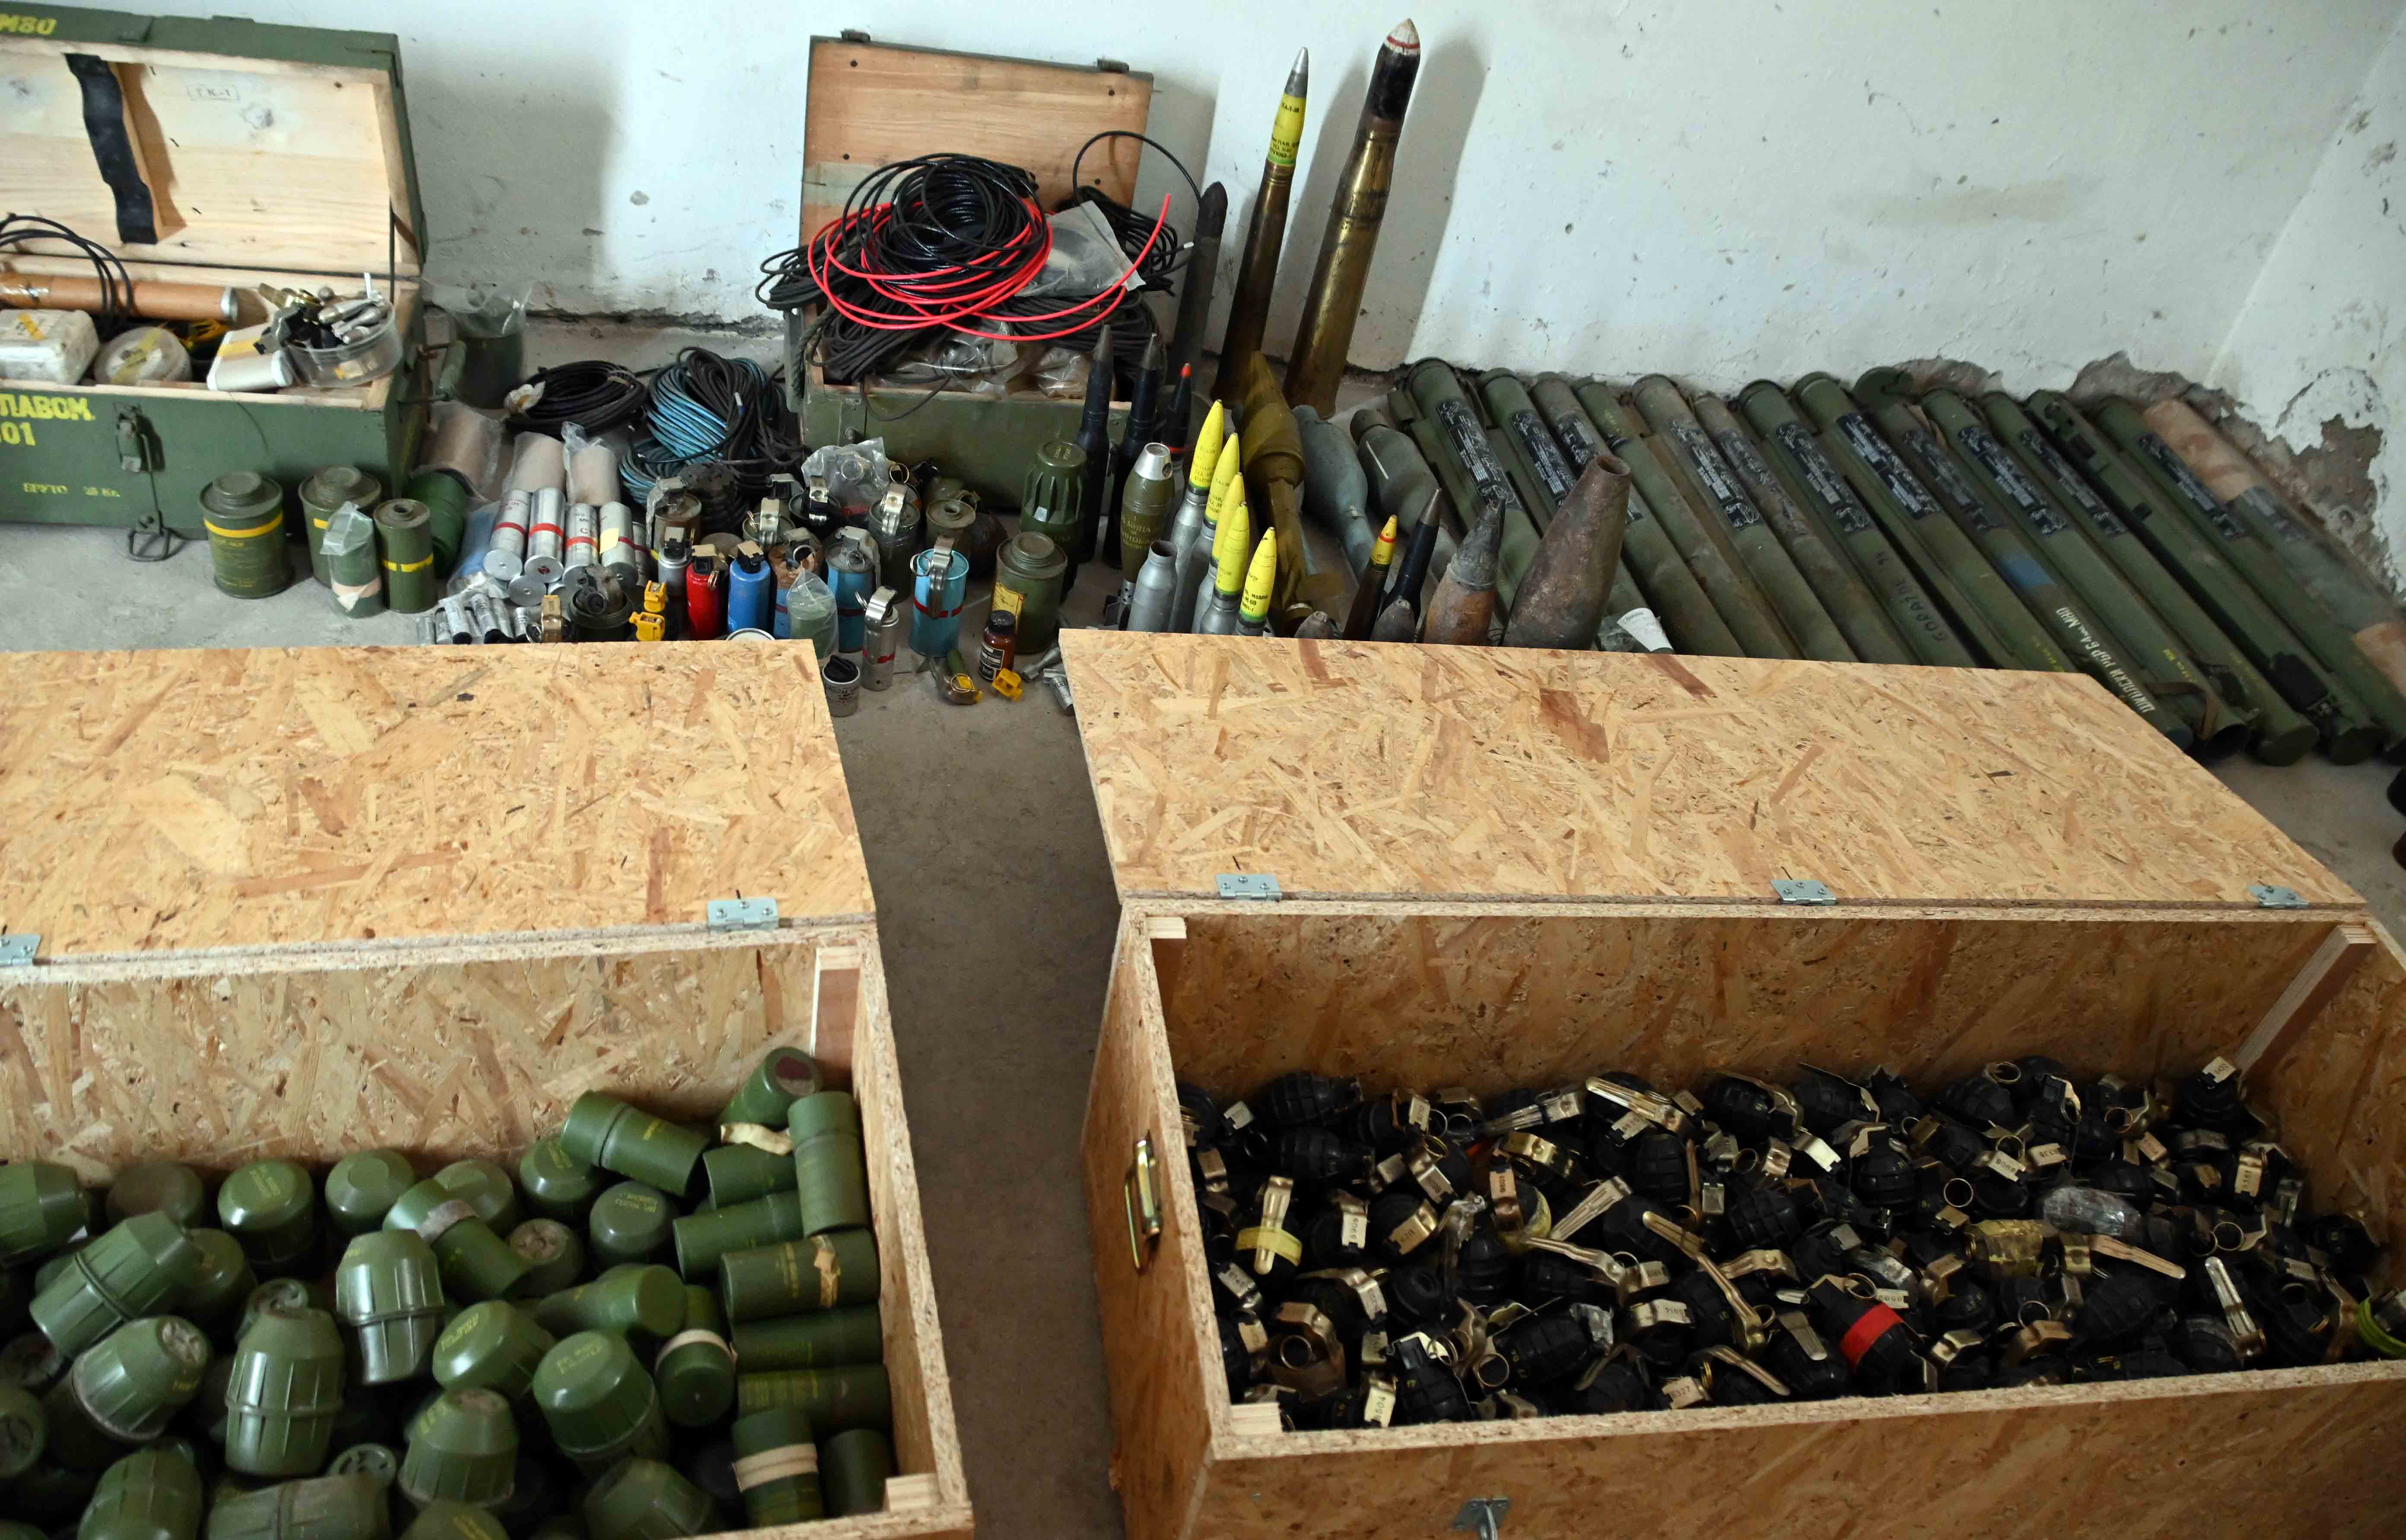 Prikaz neregistrovanog oružja, municije i minsko-eksplozivnih sredstava